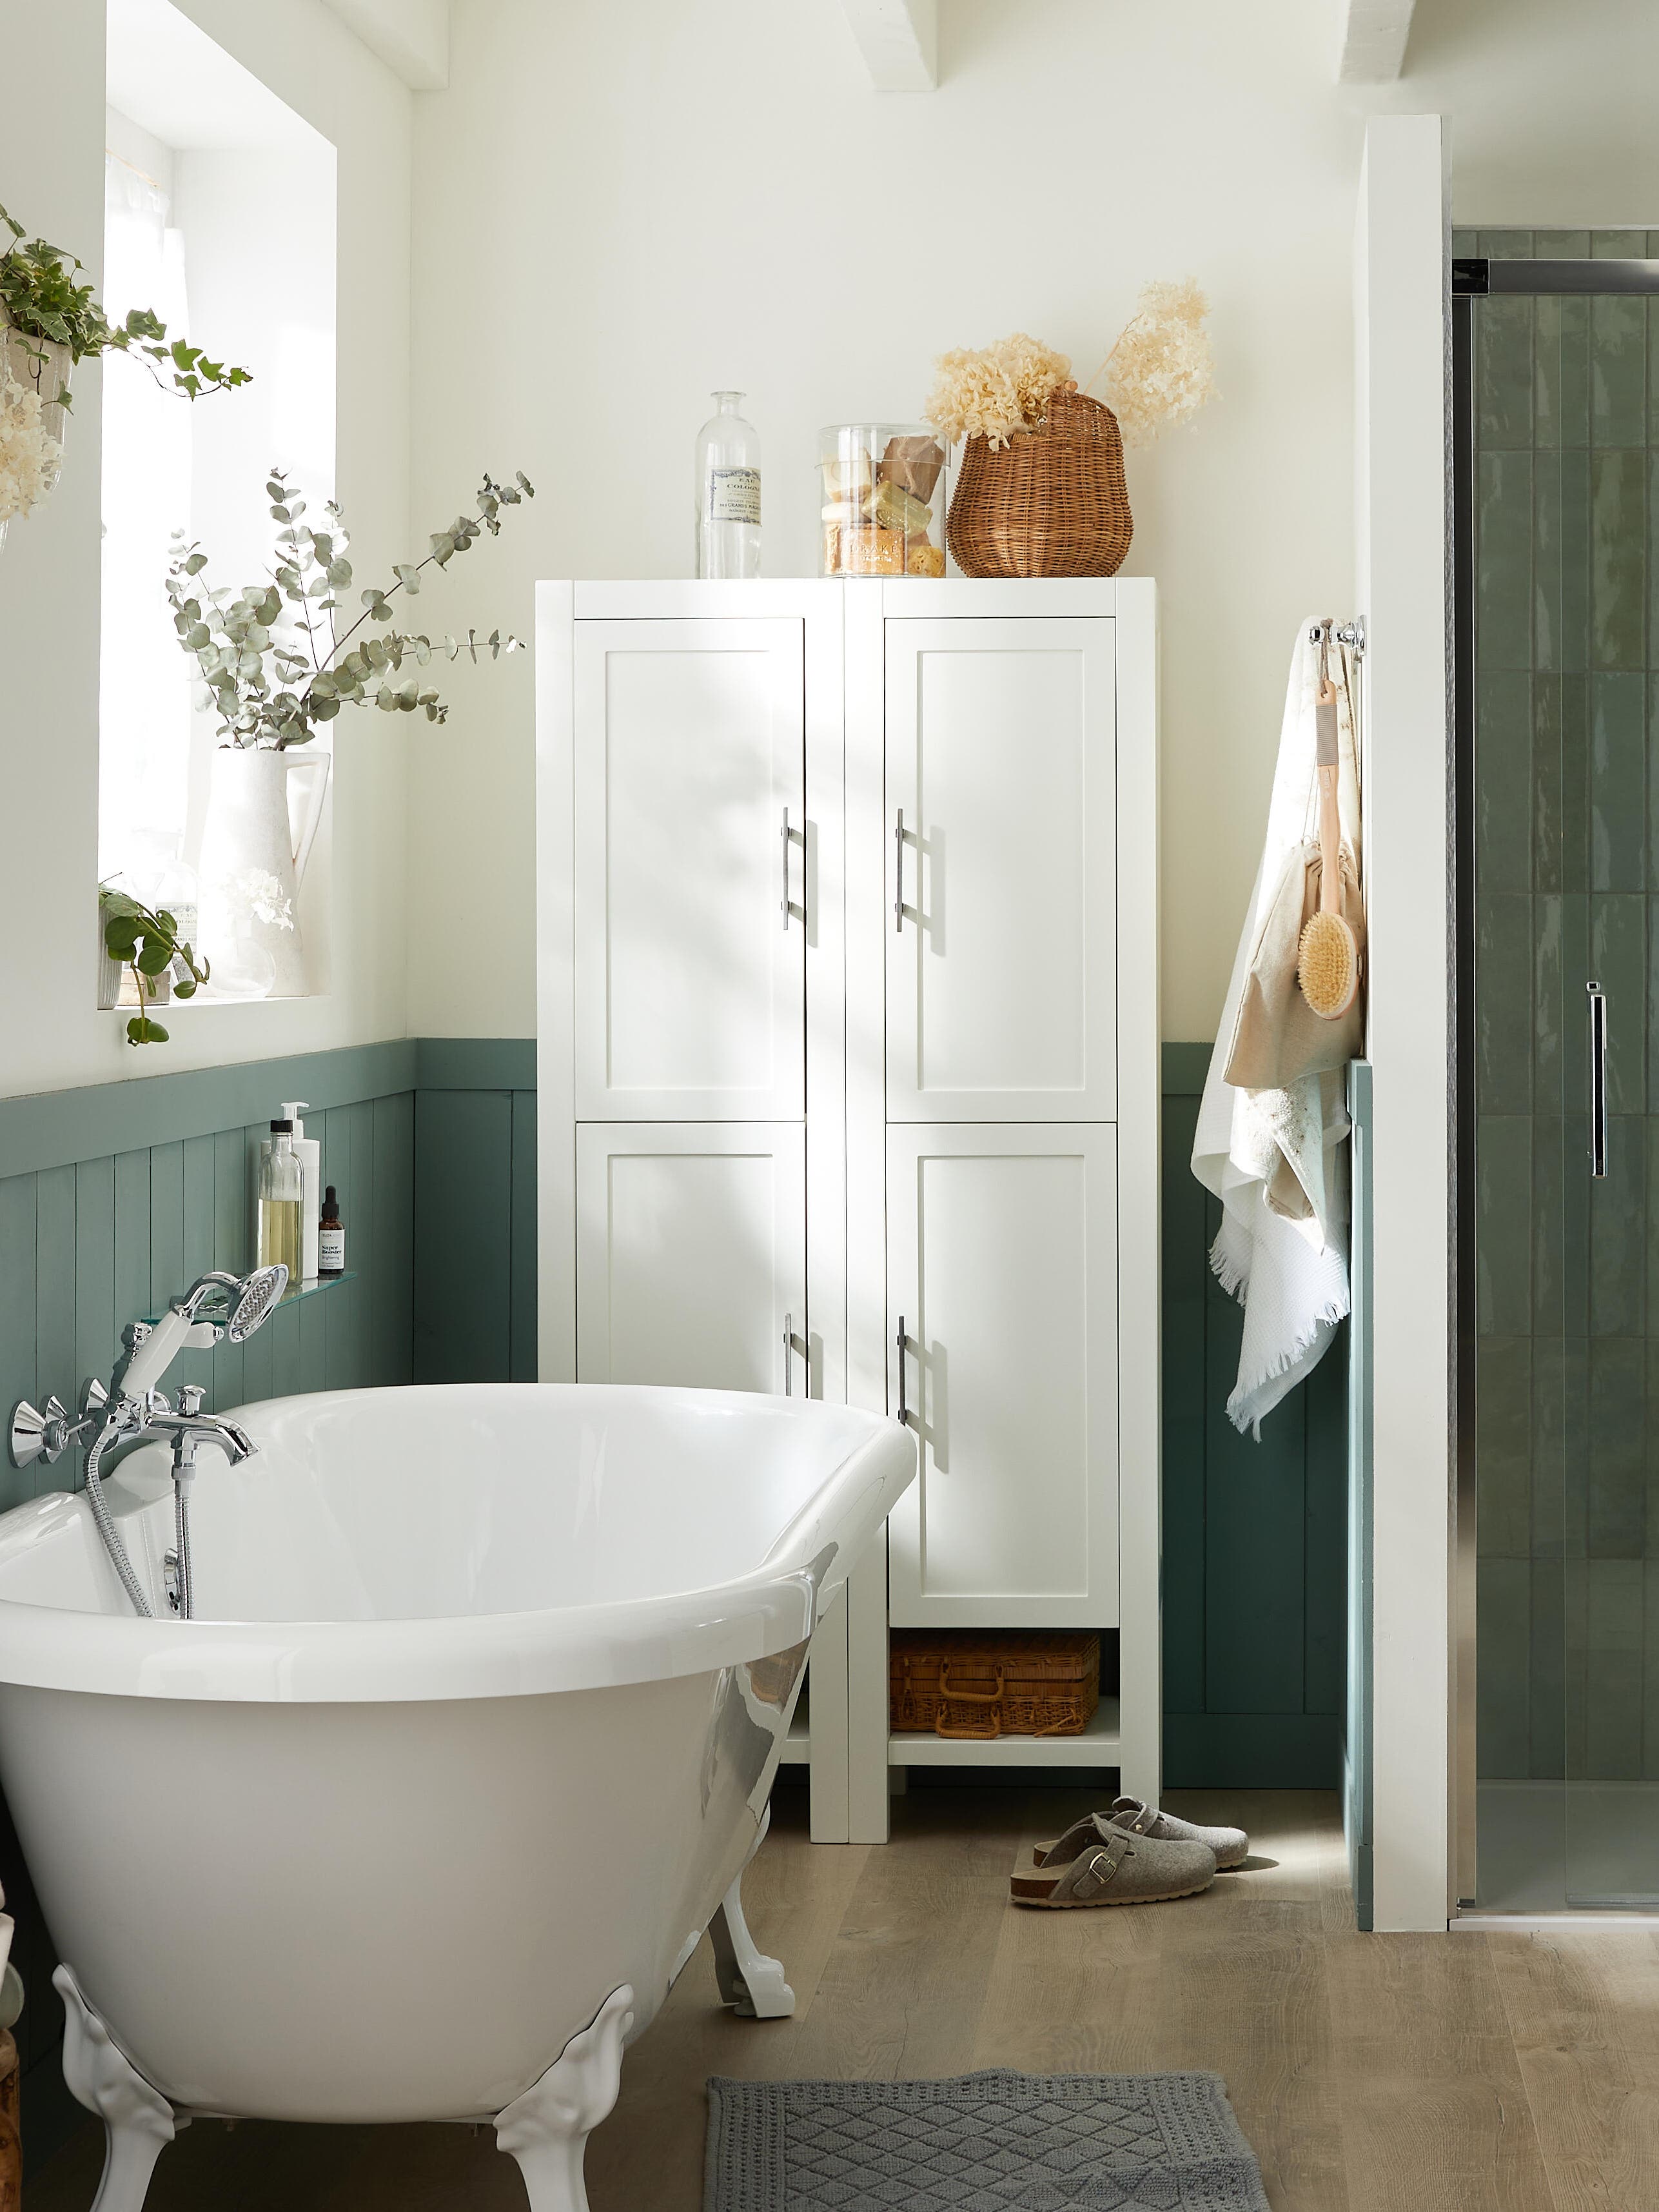 Déco salle de bains : 27 idées inspirantes pour donner du style